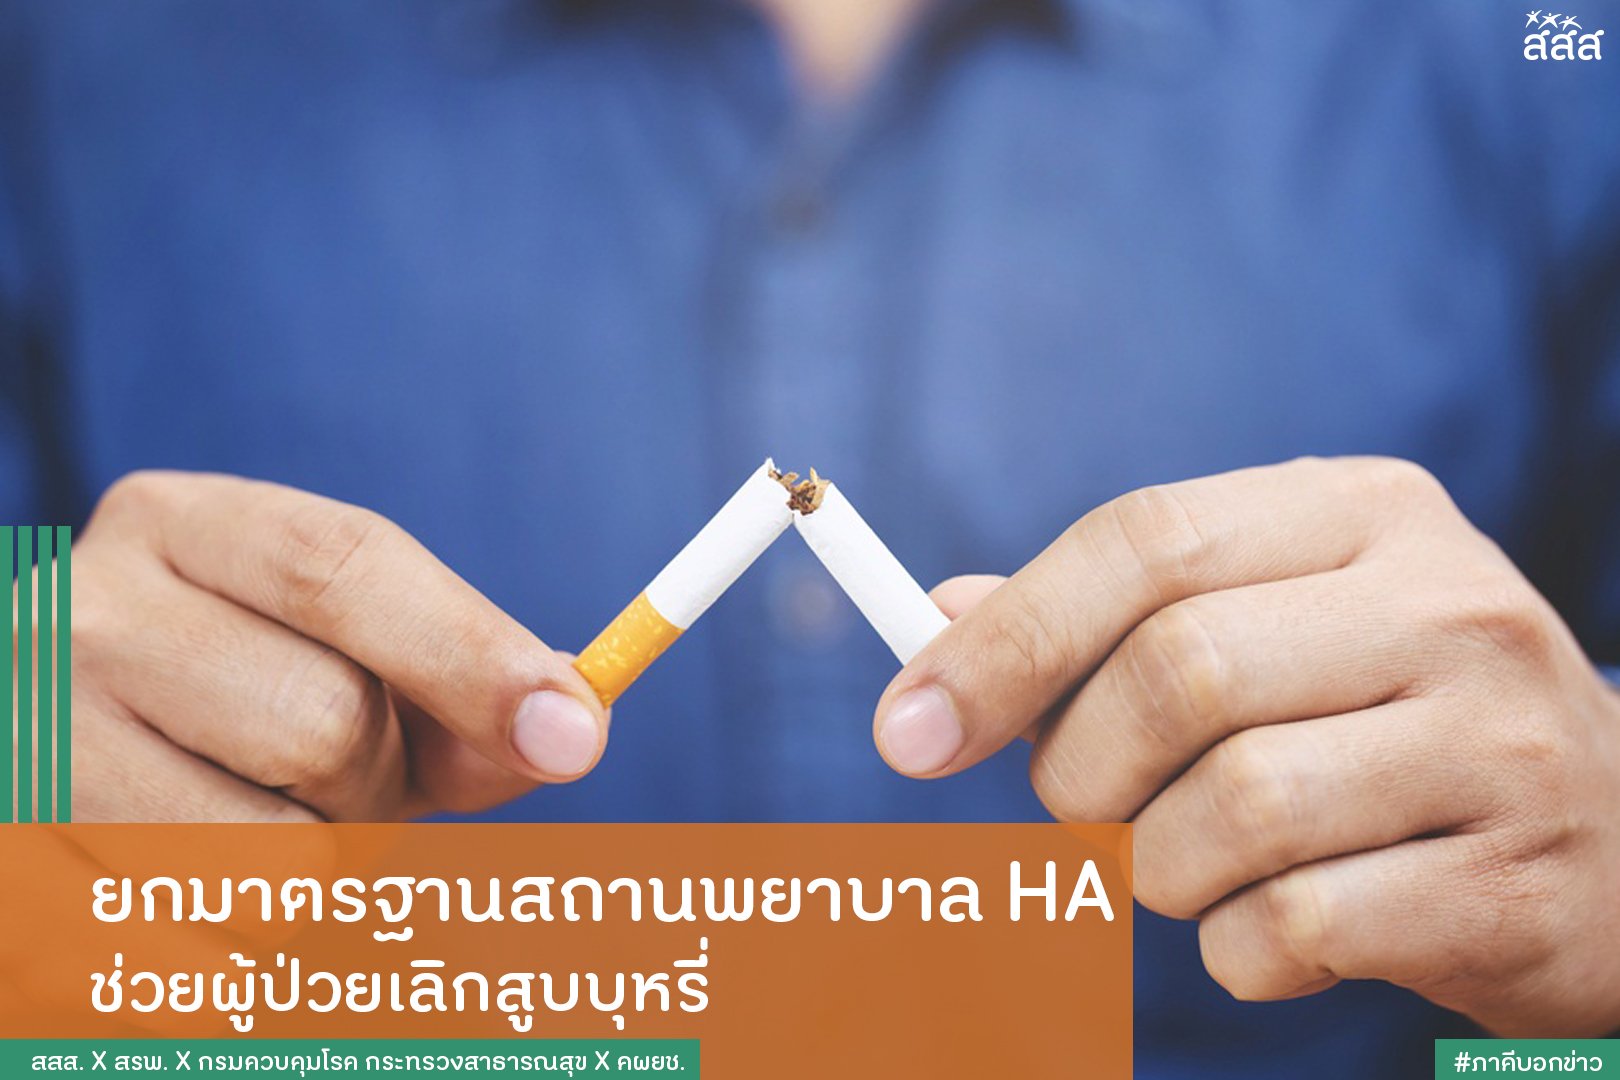 ยกมาตรฐานสถานพยาบาล HA ช่วยผู้ป่วยเลิกสูบบุหรี่ thaihealth